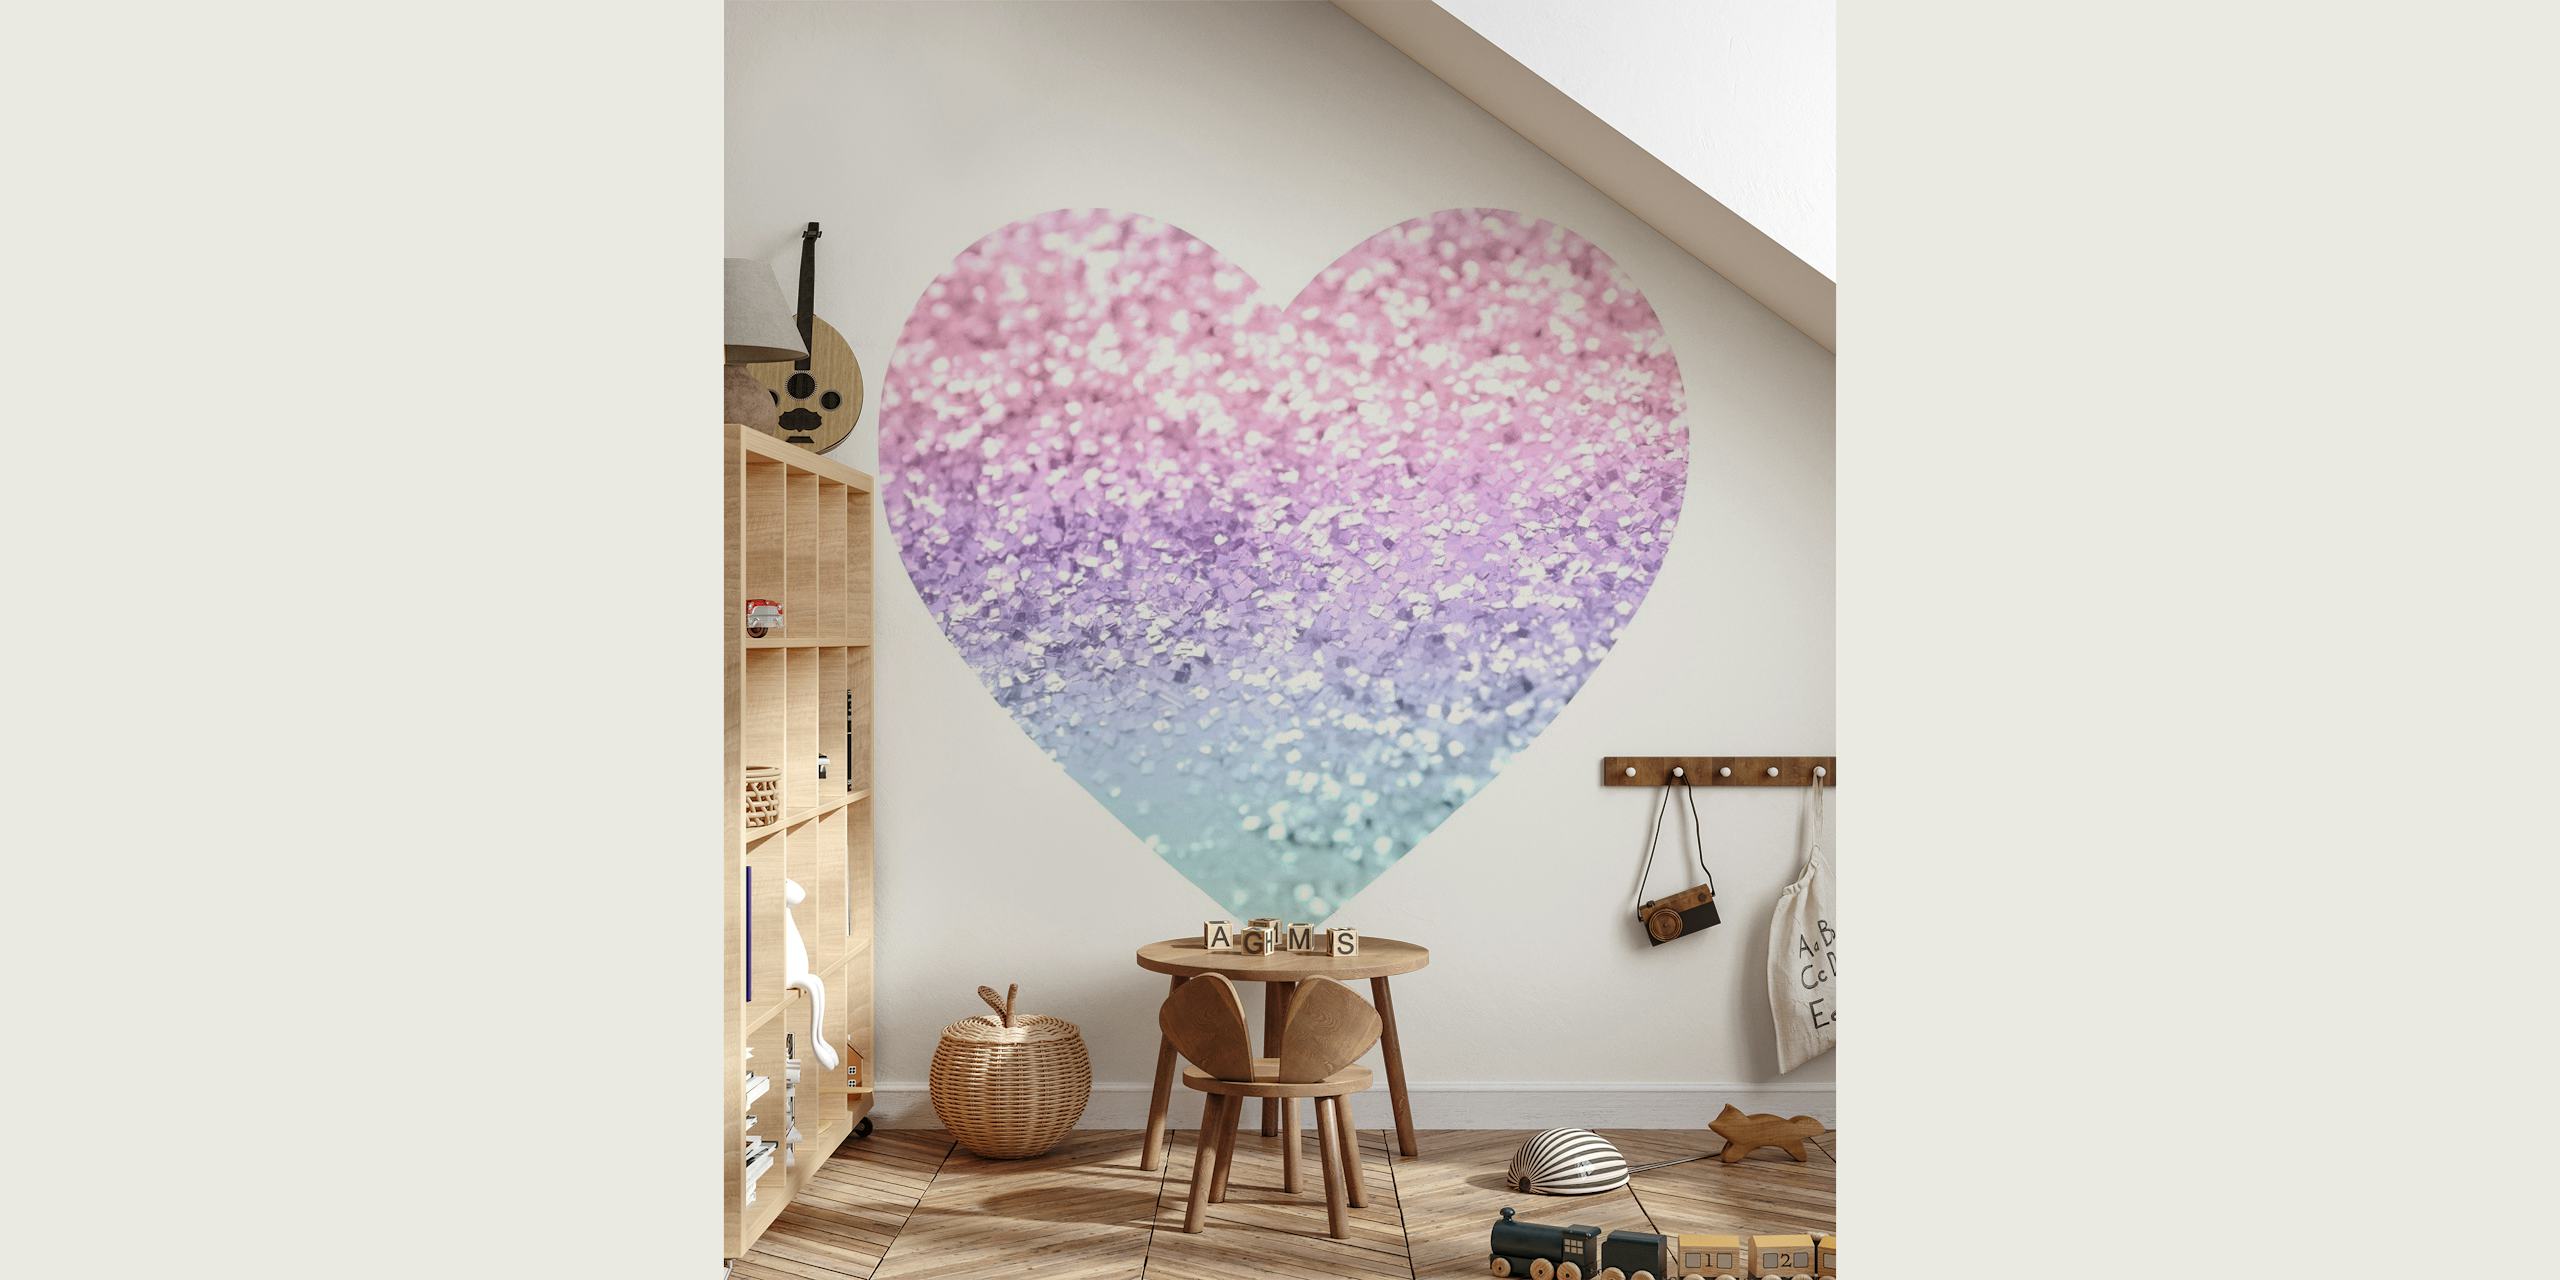 Papier peint mural coeur pailleté inspiré d'une licorne en rose, violet et bleu